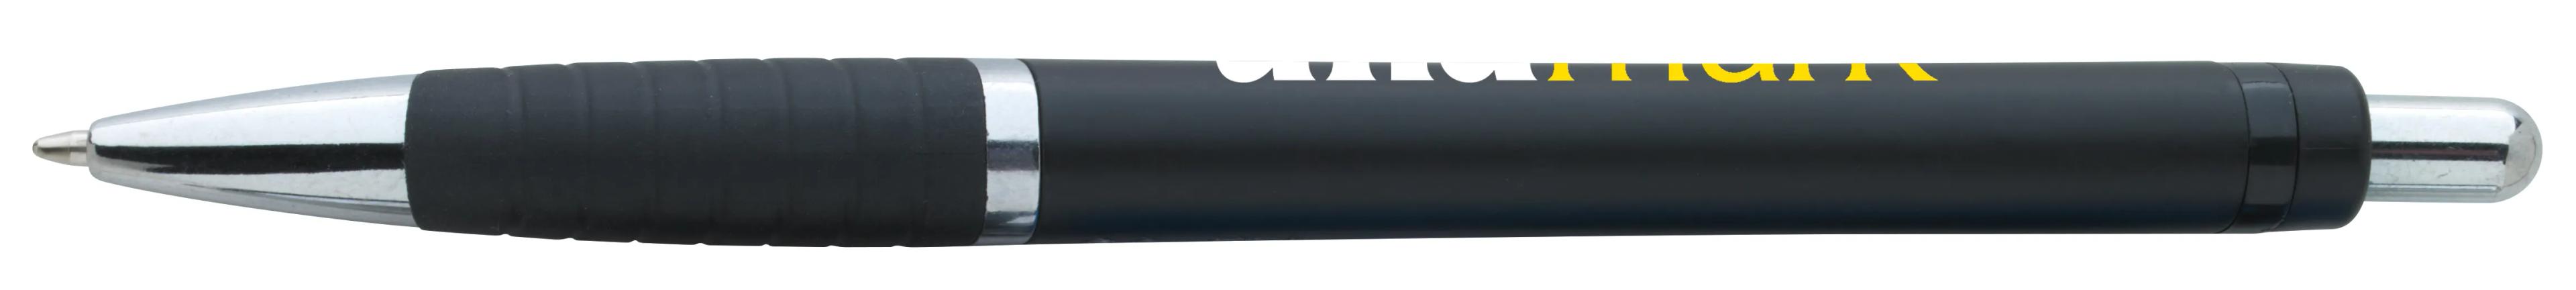 Arrow Metallic Pen 33 of 43